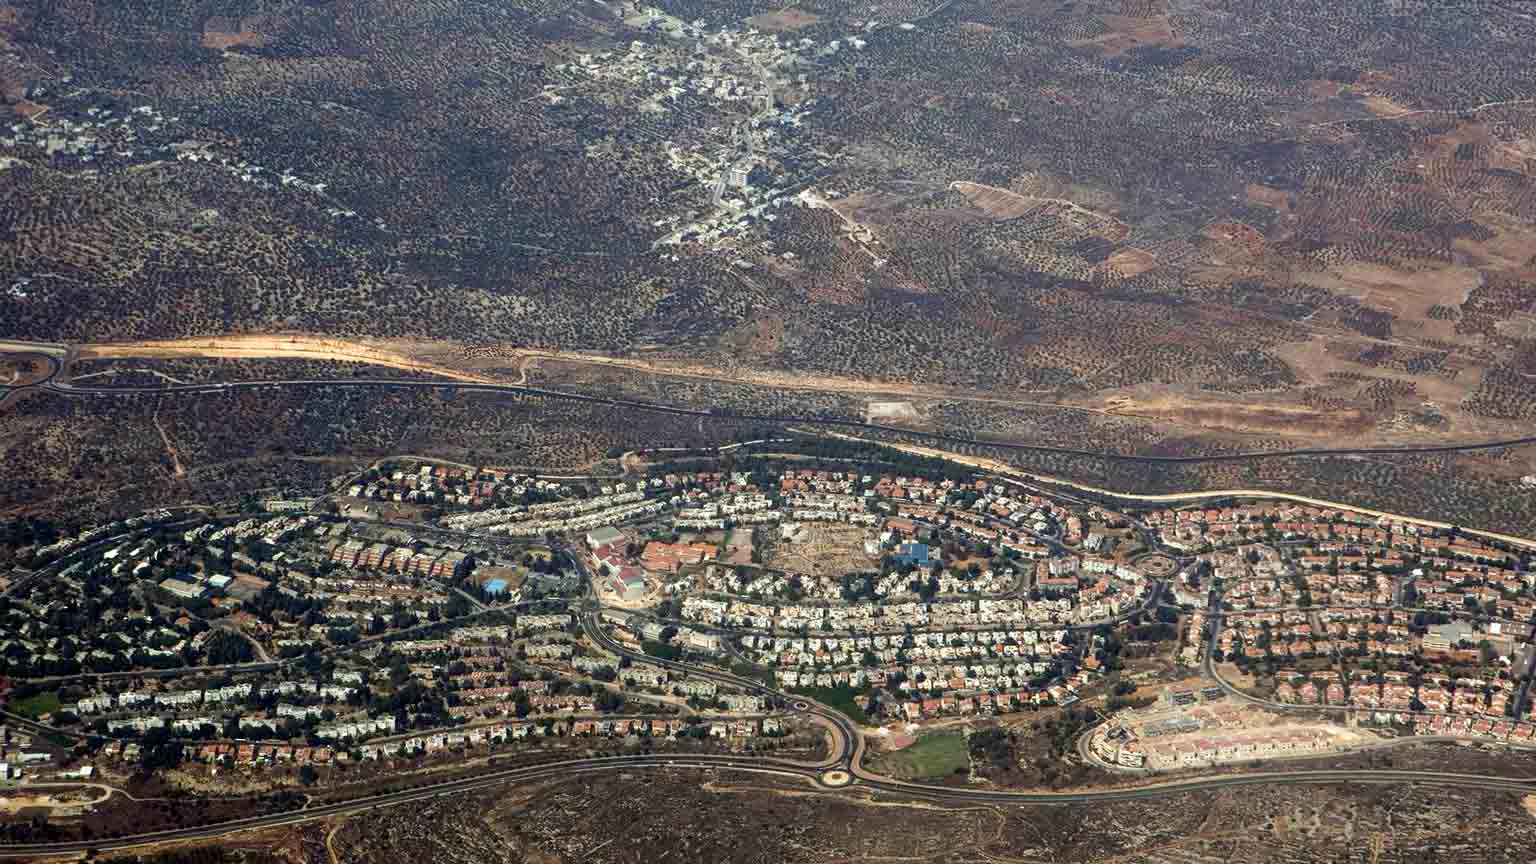 Una ONG acusa a los bancos israelíes de beneficiarse de los asentamientos ilegales en Cisjordania